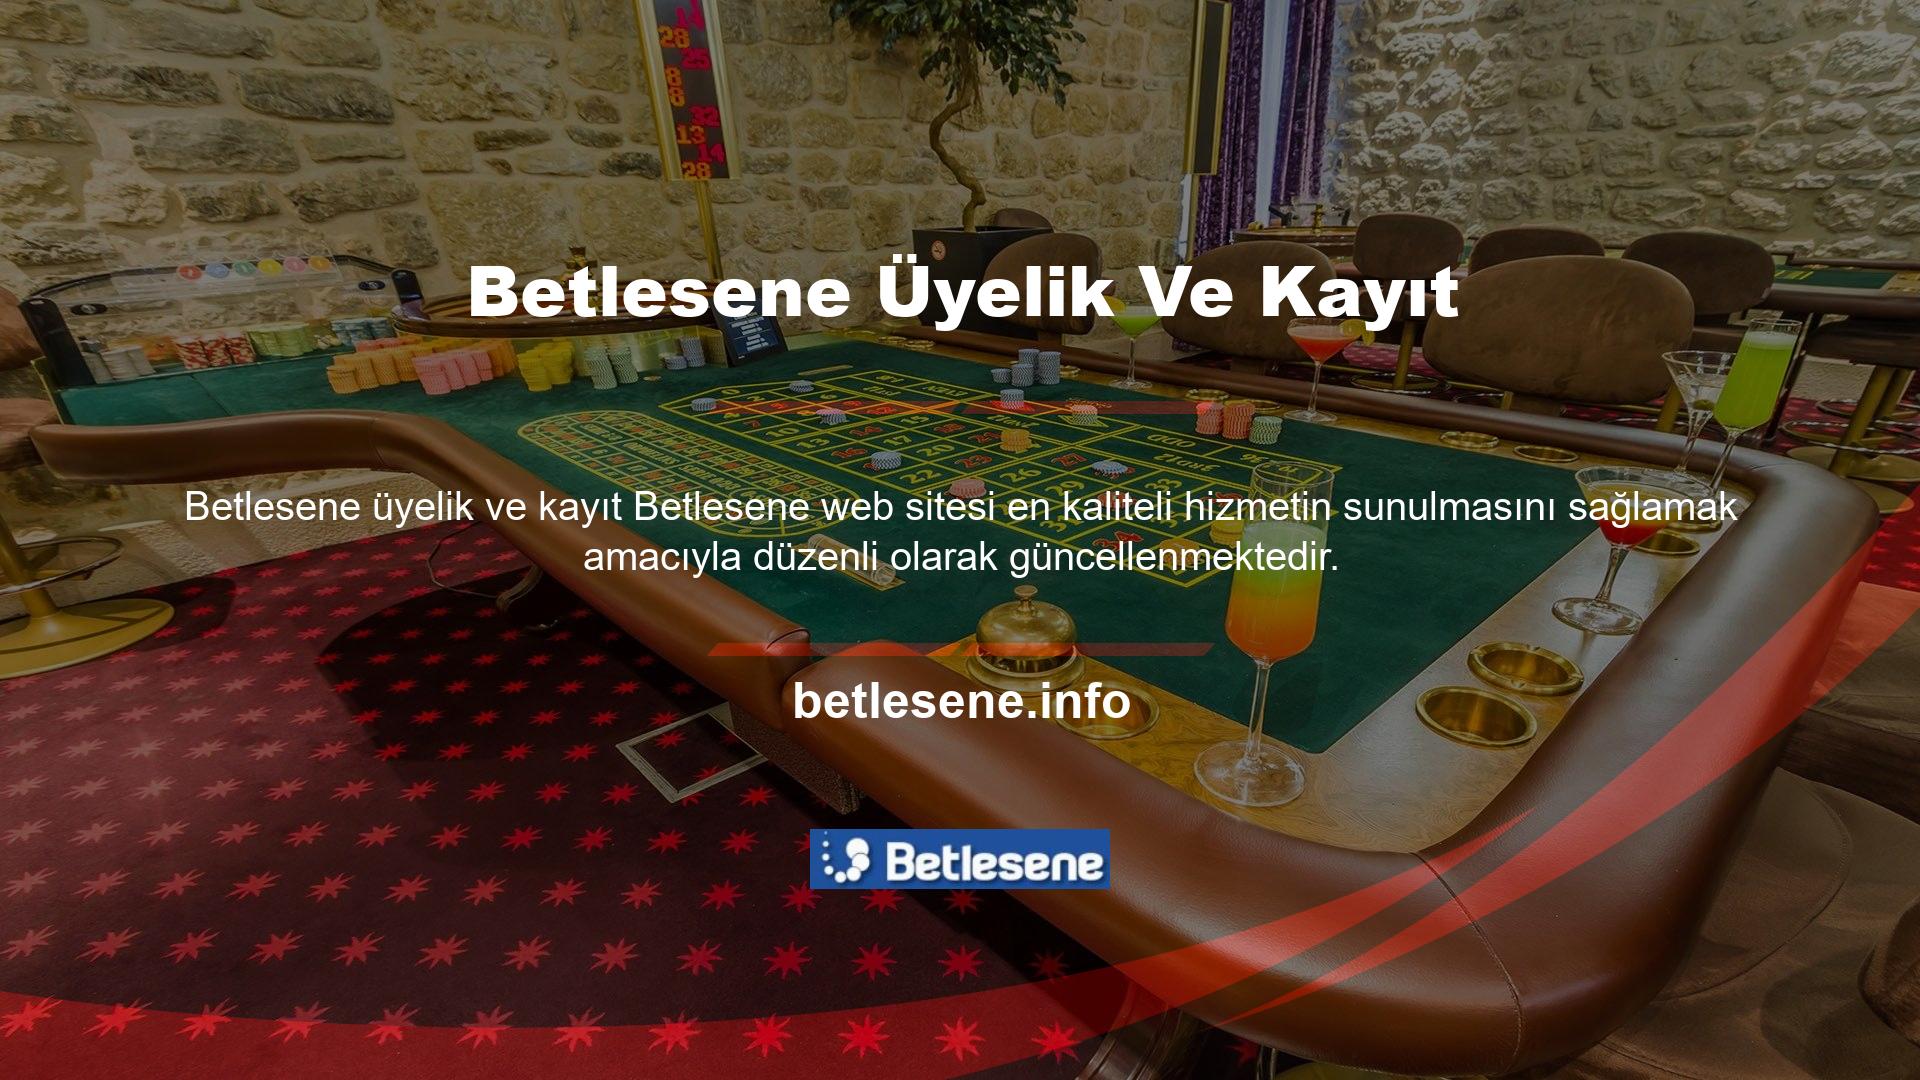 Türkiye’de çok sayıda çevrimiçi slot oyun sitesi bulunmaktadır